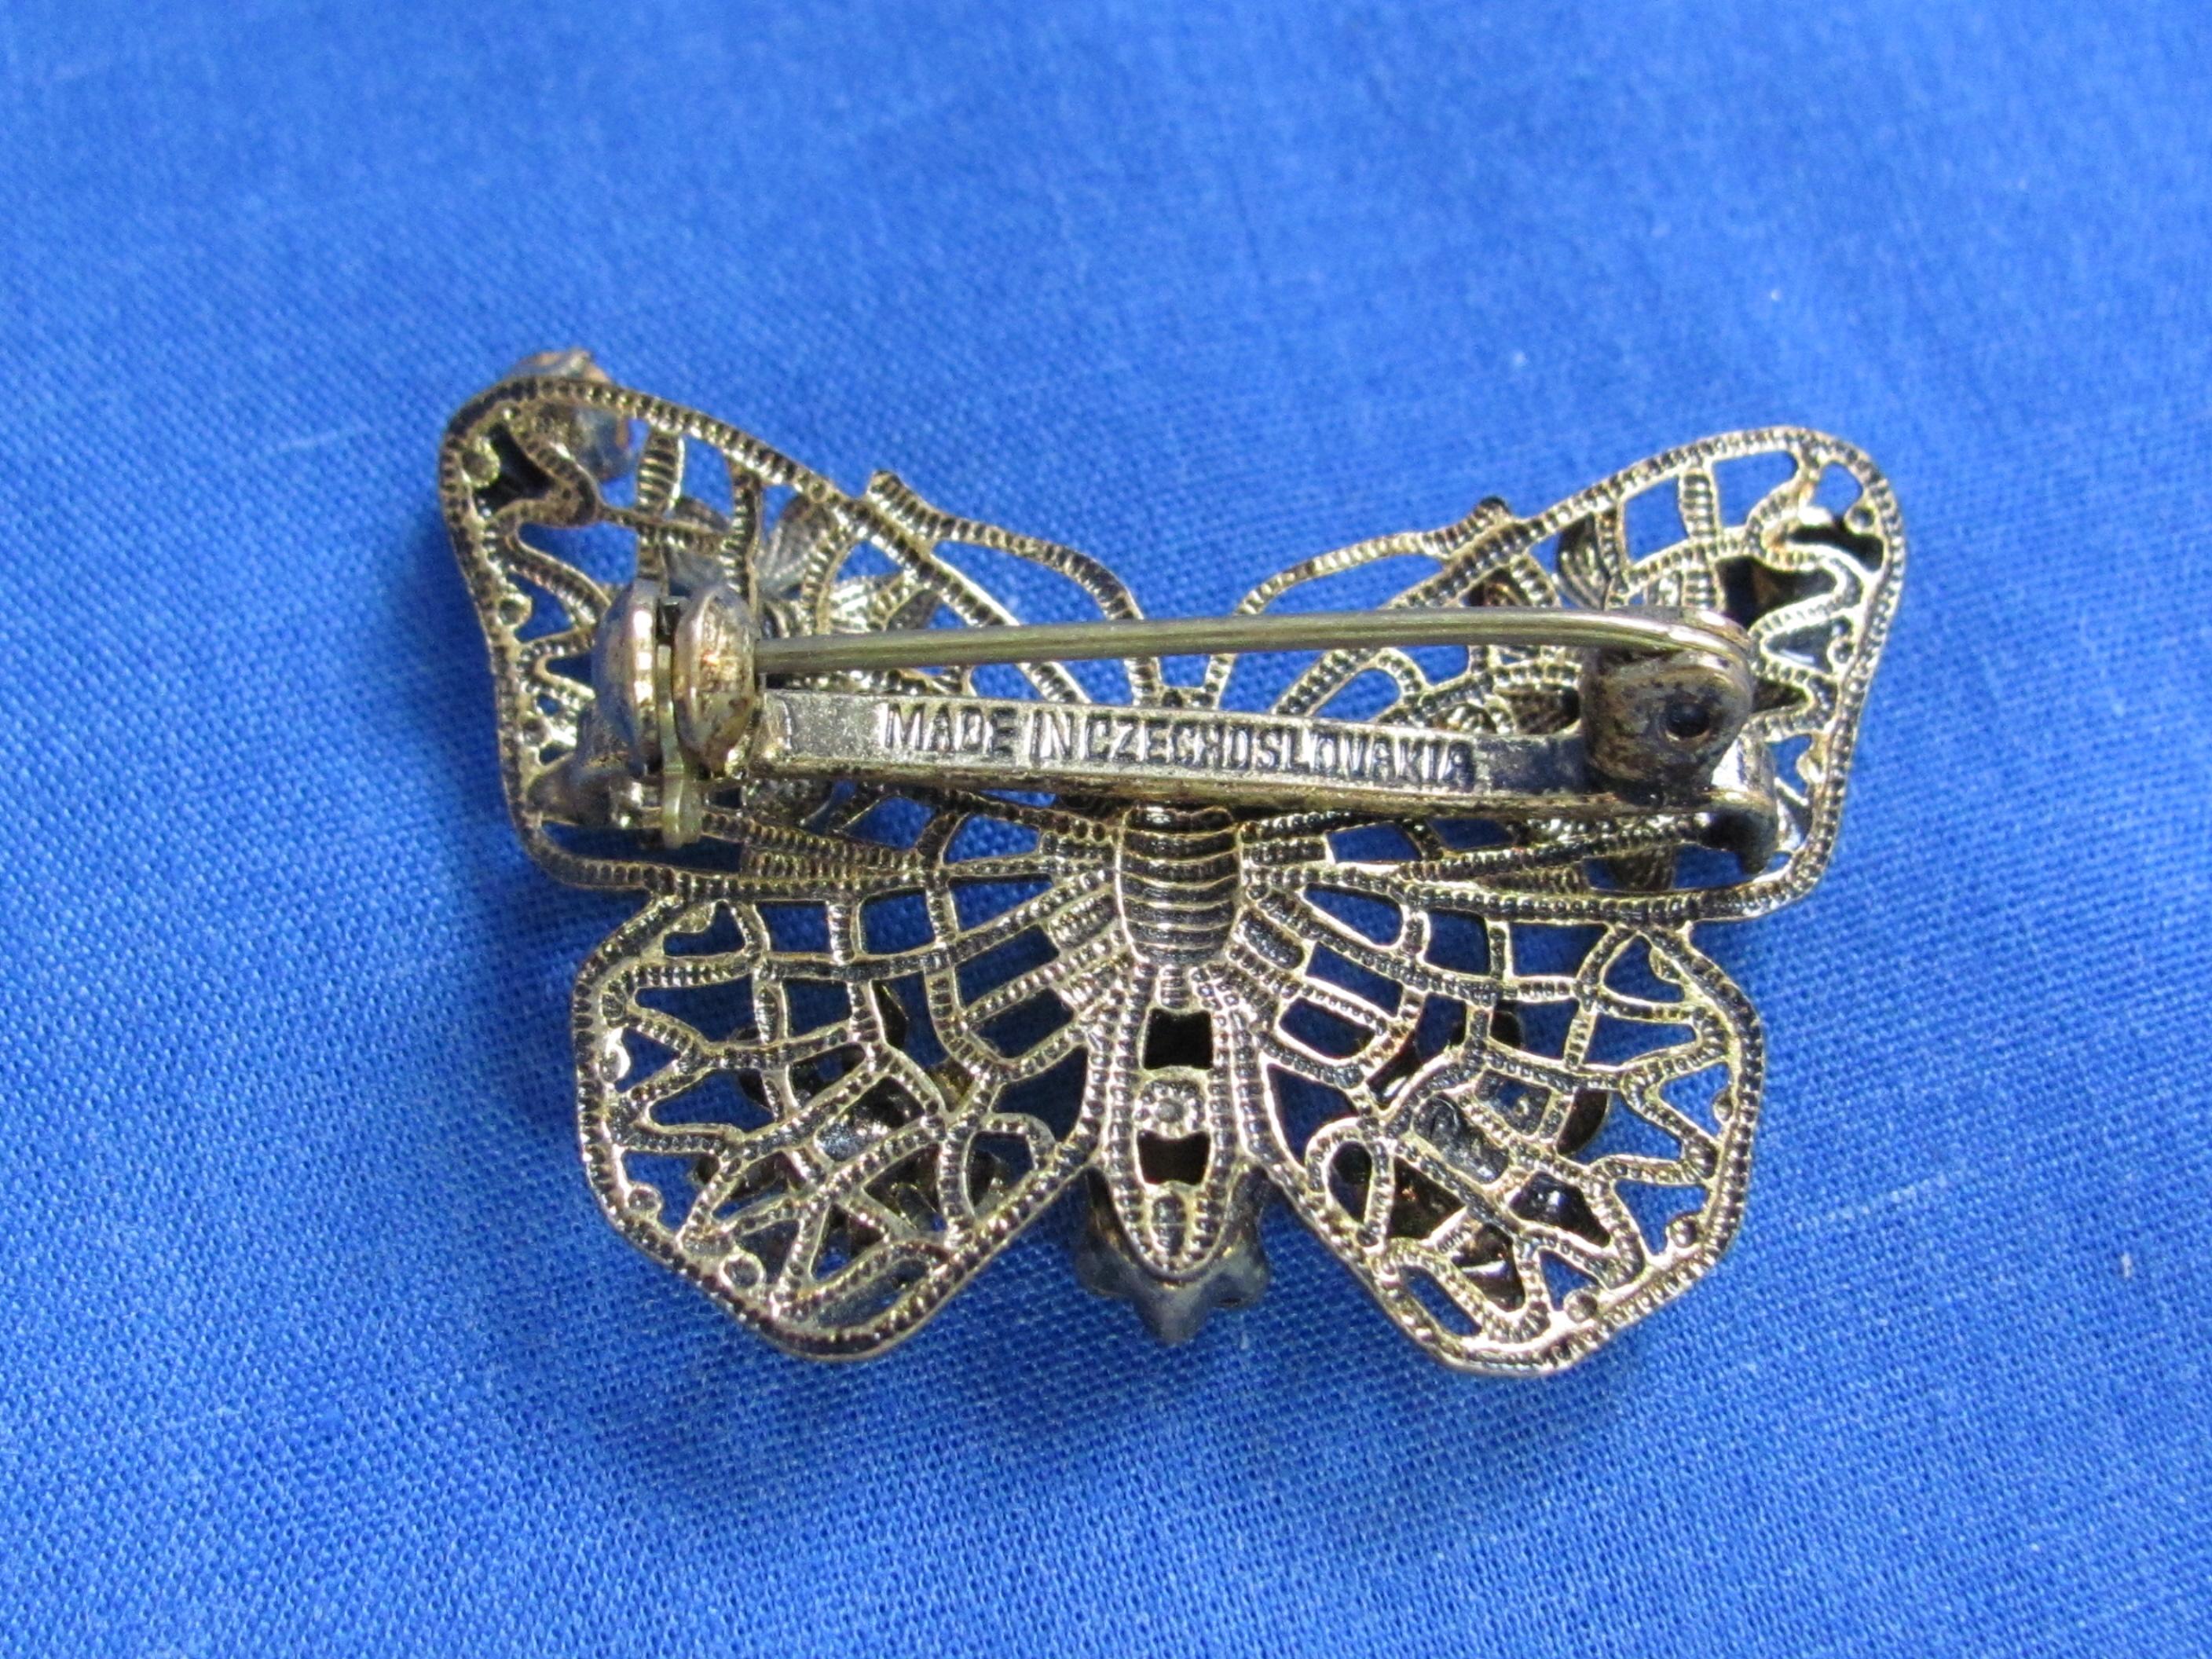 Butterfly Pin made in Czechoslovakia – Fun Rhinestone Hinged Bracelet